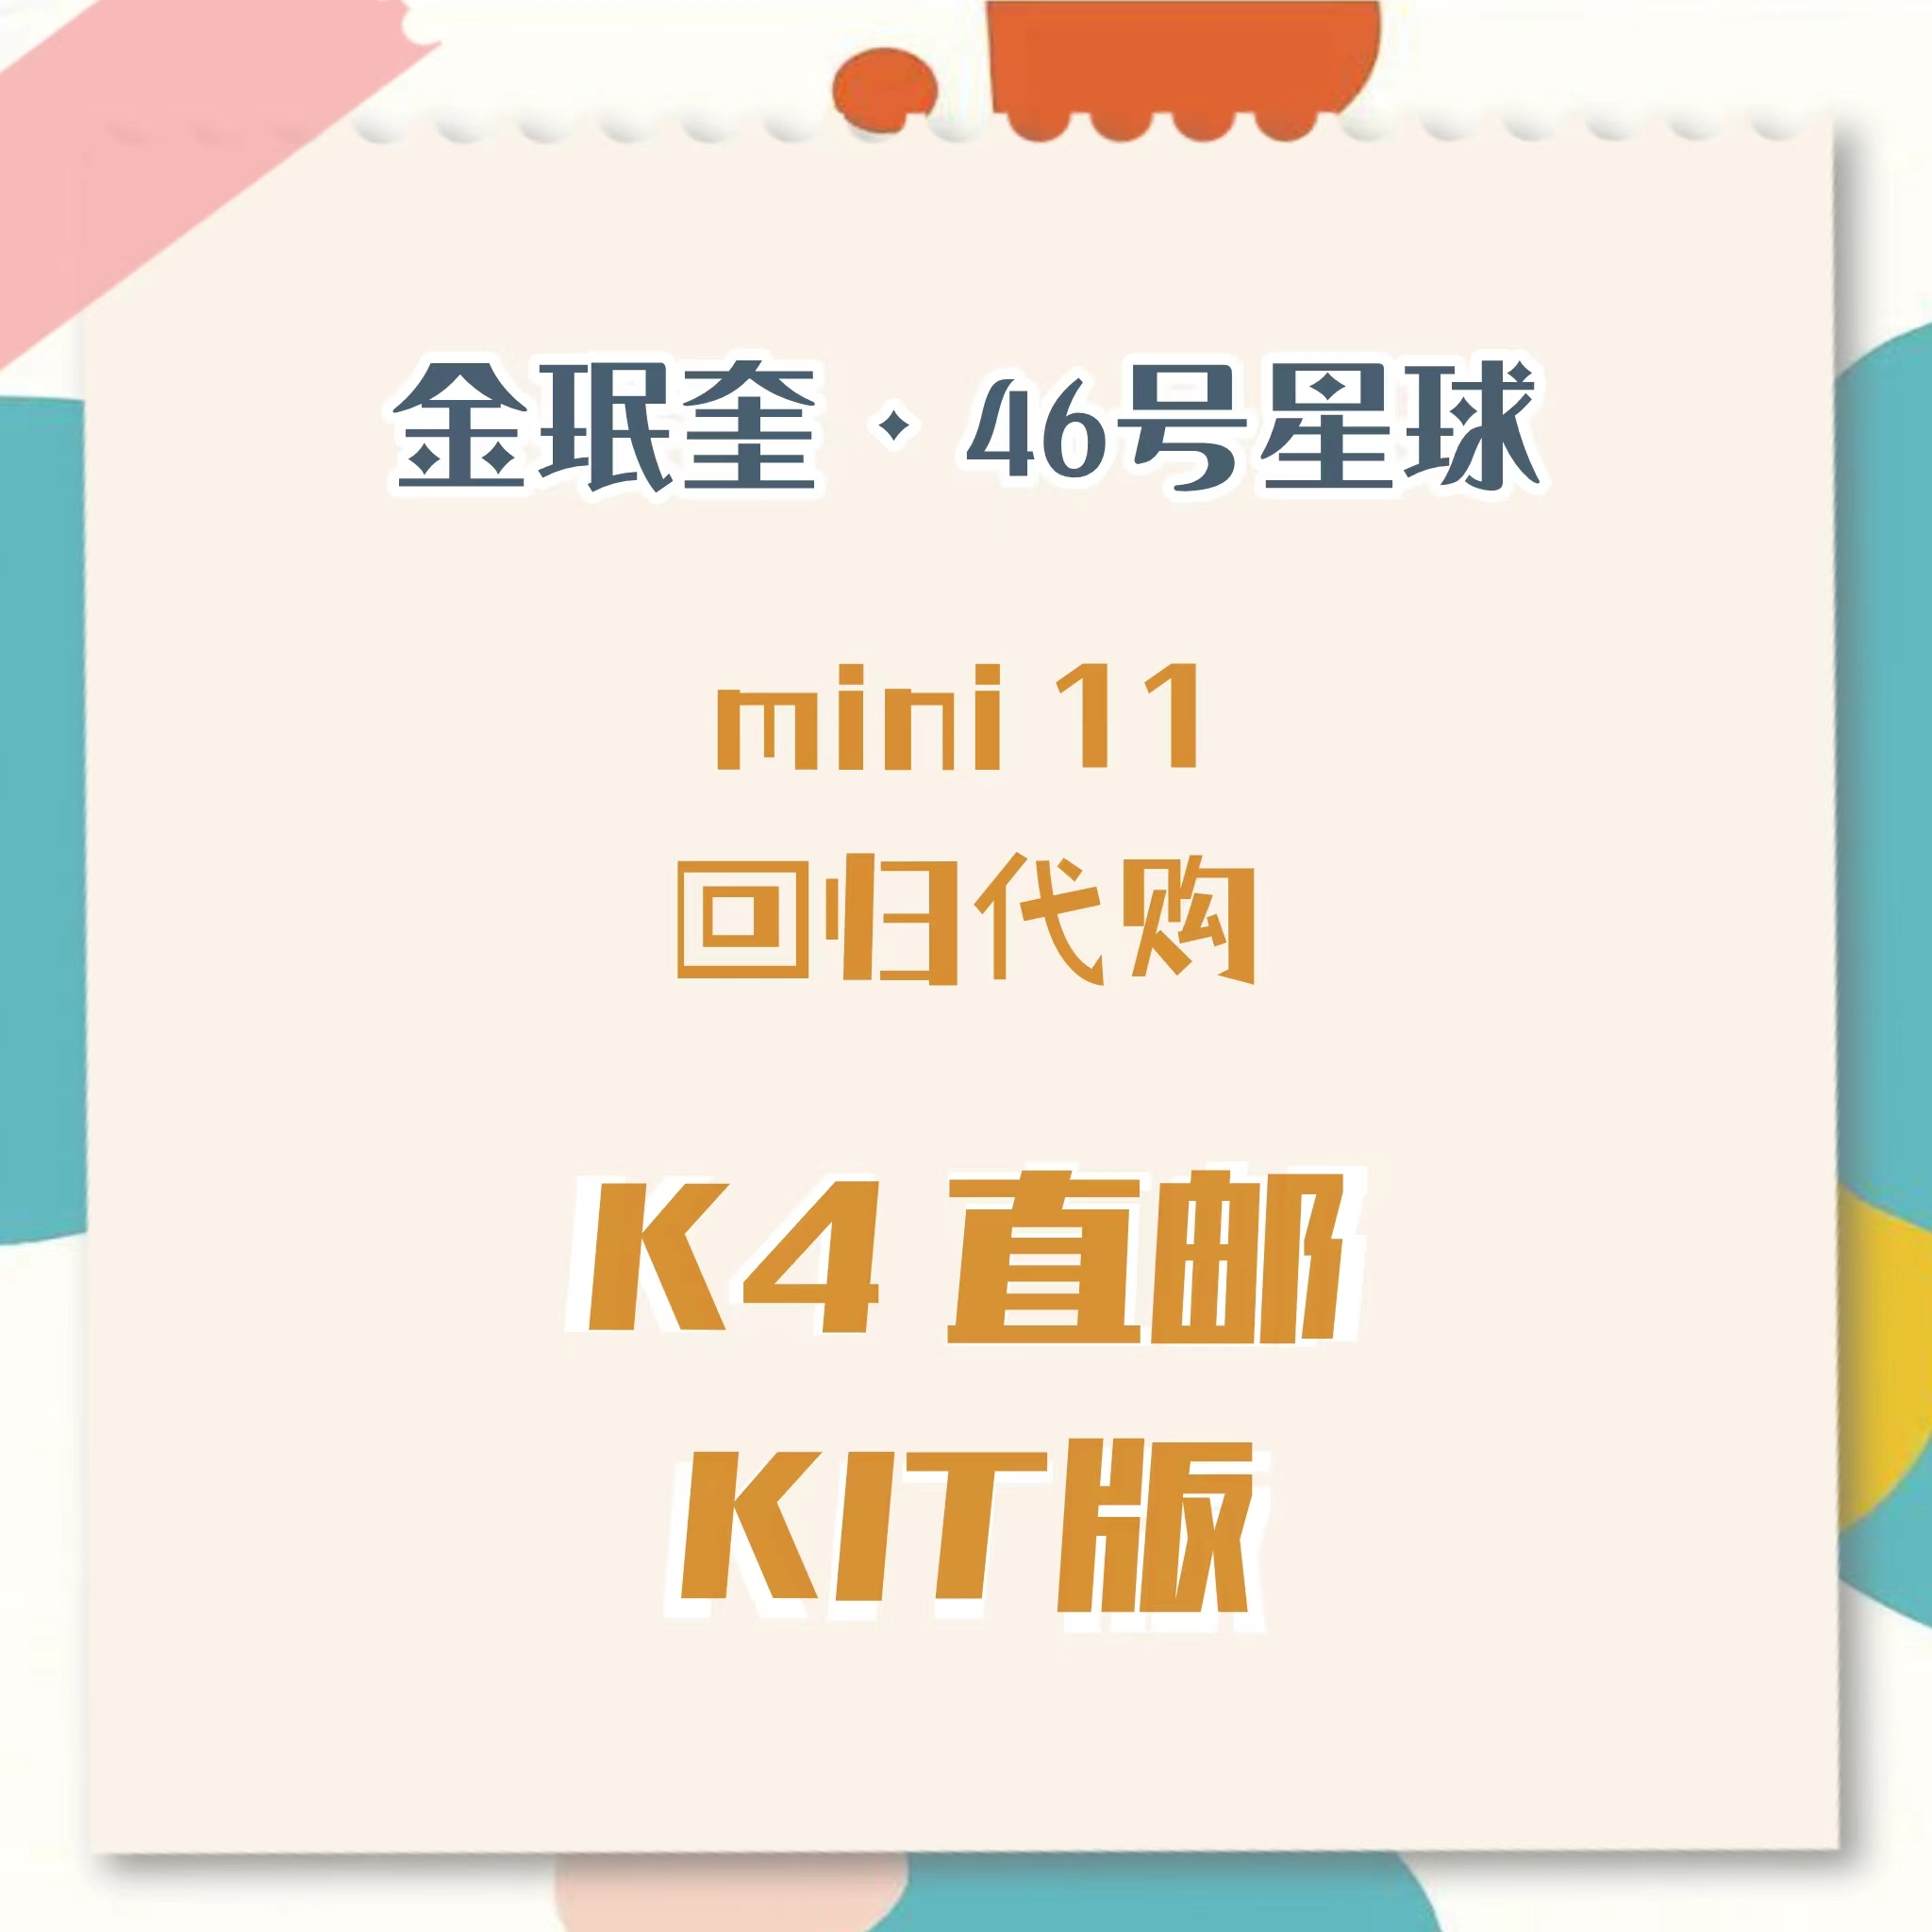 [全款 裸专] SEVENTEEN - 11th Mini Album [SEVENTEENTH HEAVEN] (KiT Ver.)_金珉奎Mingyu_46号星球 